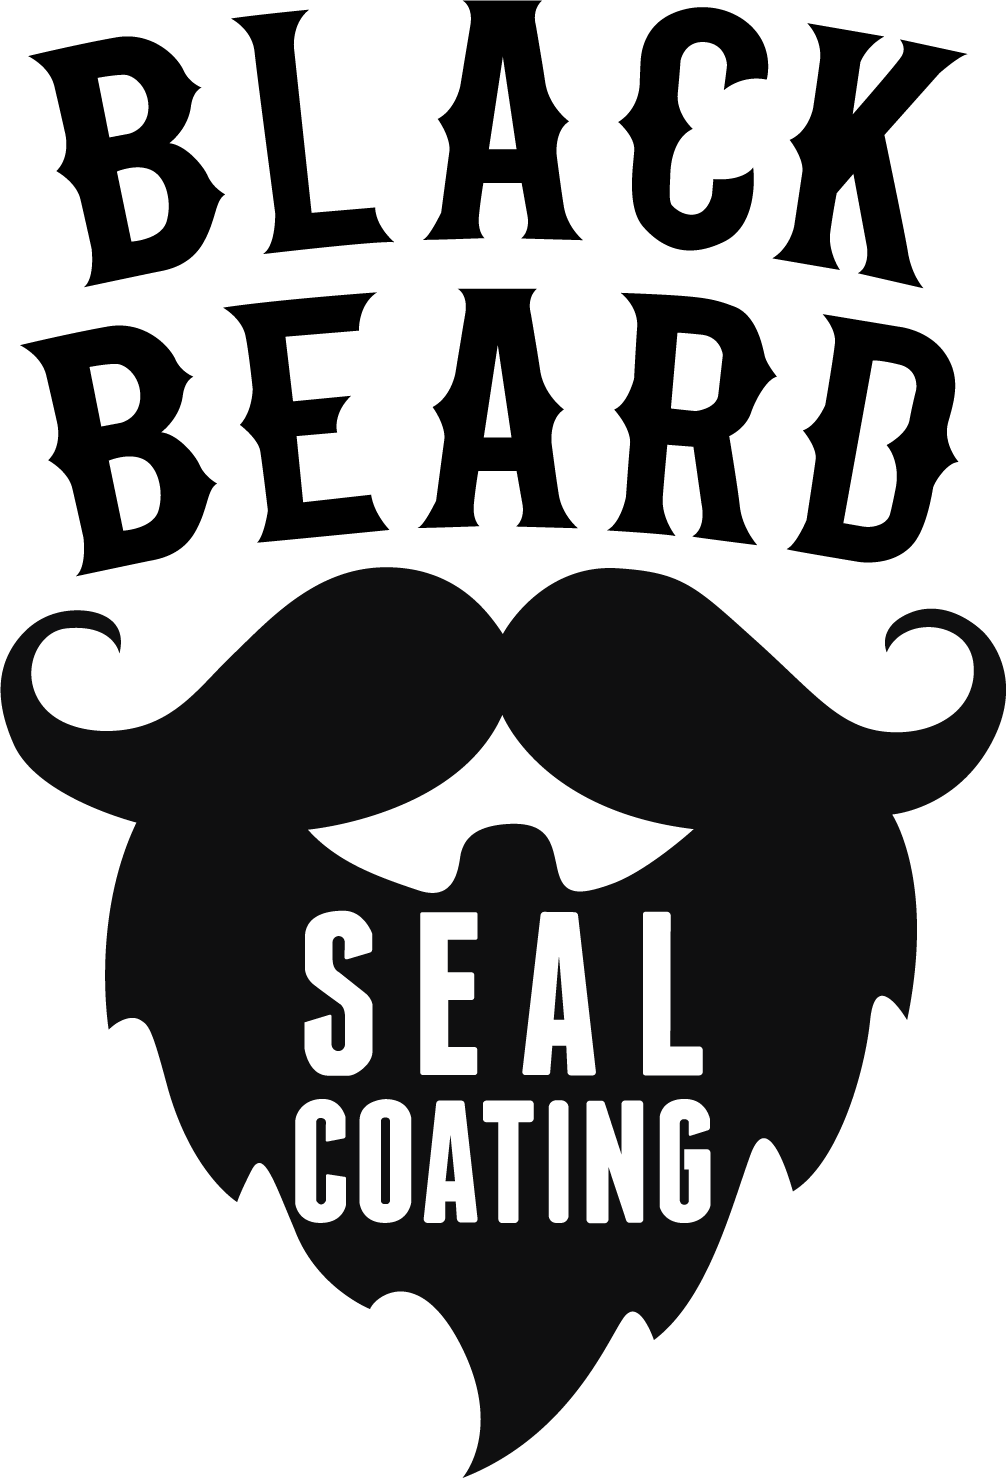 Sealcoating Logo - Blackbeard Sealcoating Inc